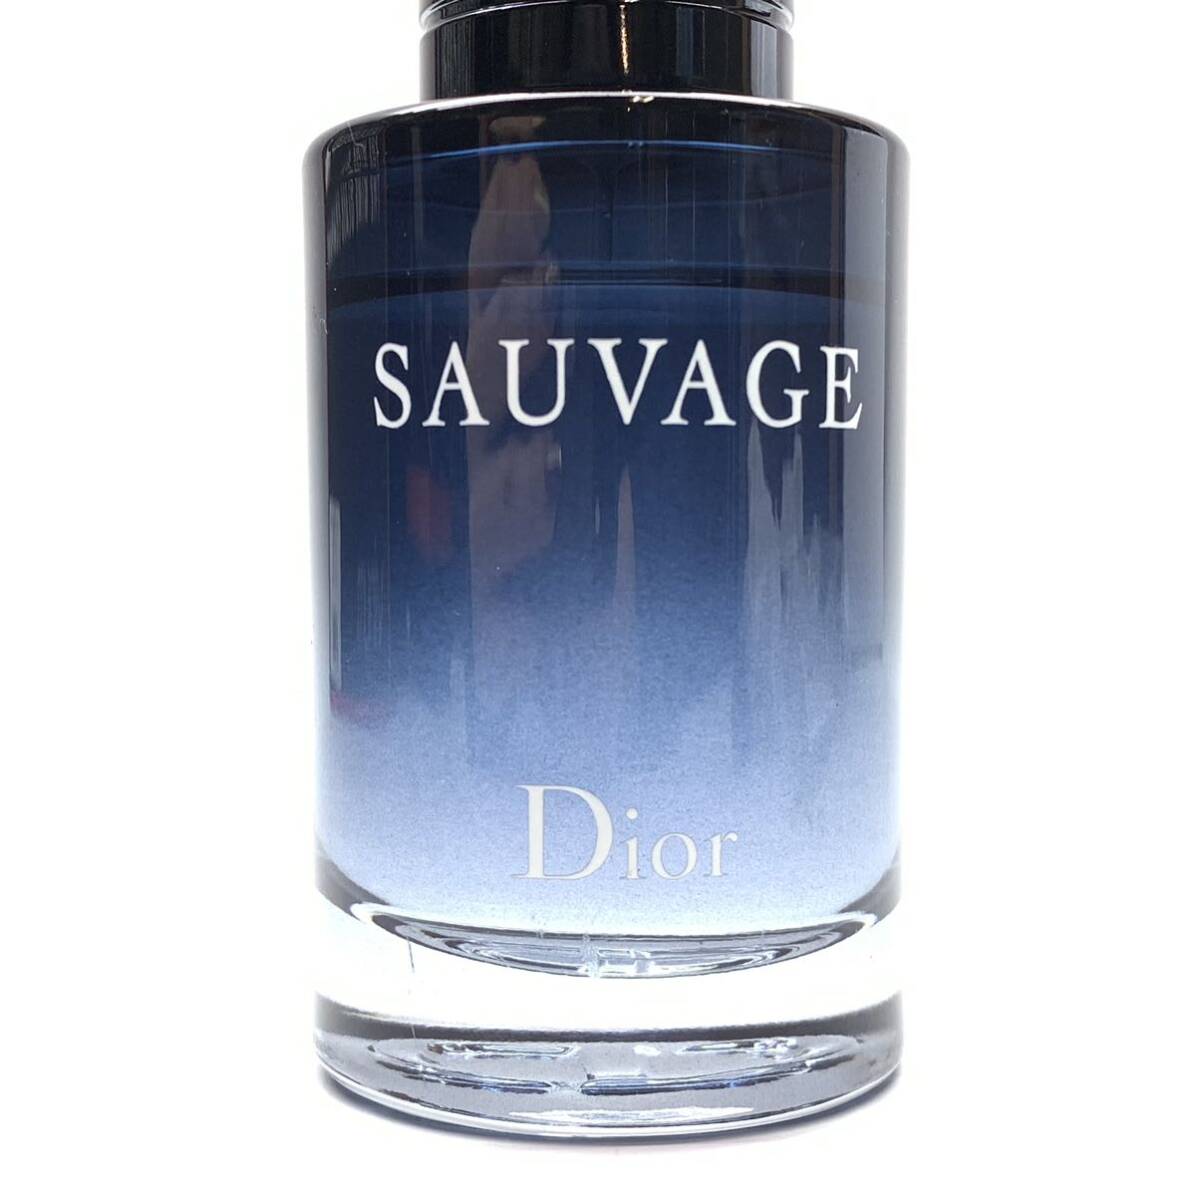 Dior ディオール SAUVAGE ソヴァージュ オードゥトワレ 60ml 香水 フレグランス 化粧品 コスメ メンズ 男性用 管理RY24001139_画像4